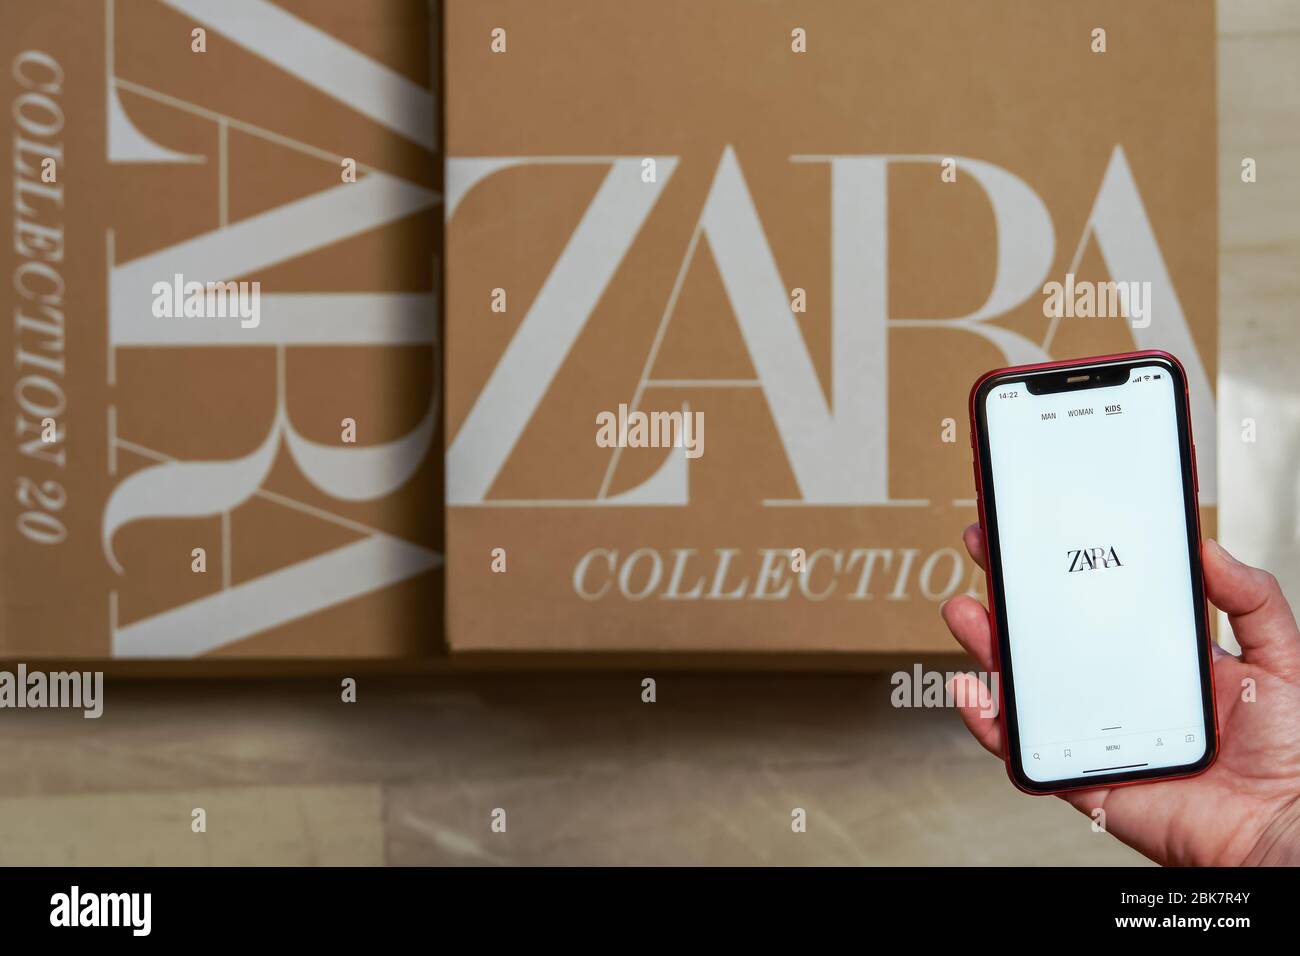 Zara spanische Kleidung Marke Online-Lieferung box. Hand auf Smartphone mit  Inditex Händler Sammlung Webseite, oben geliefert Bestellung Paket mit Logo  Stockfotografie - Alamy